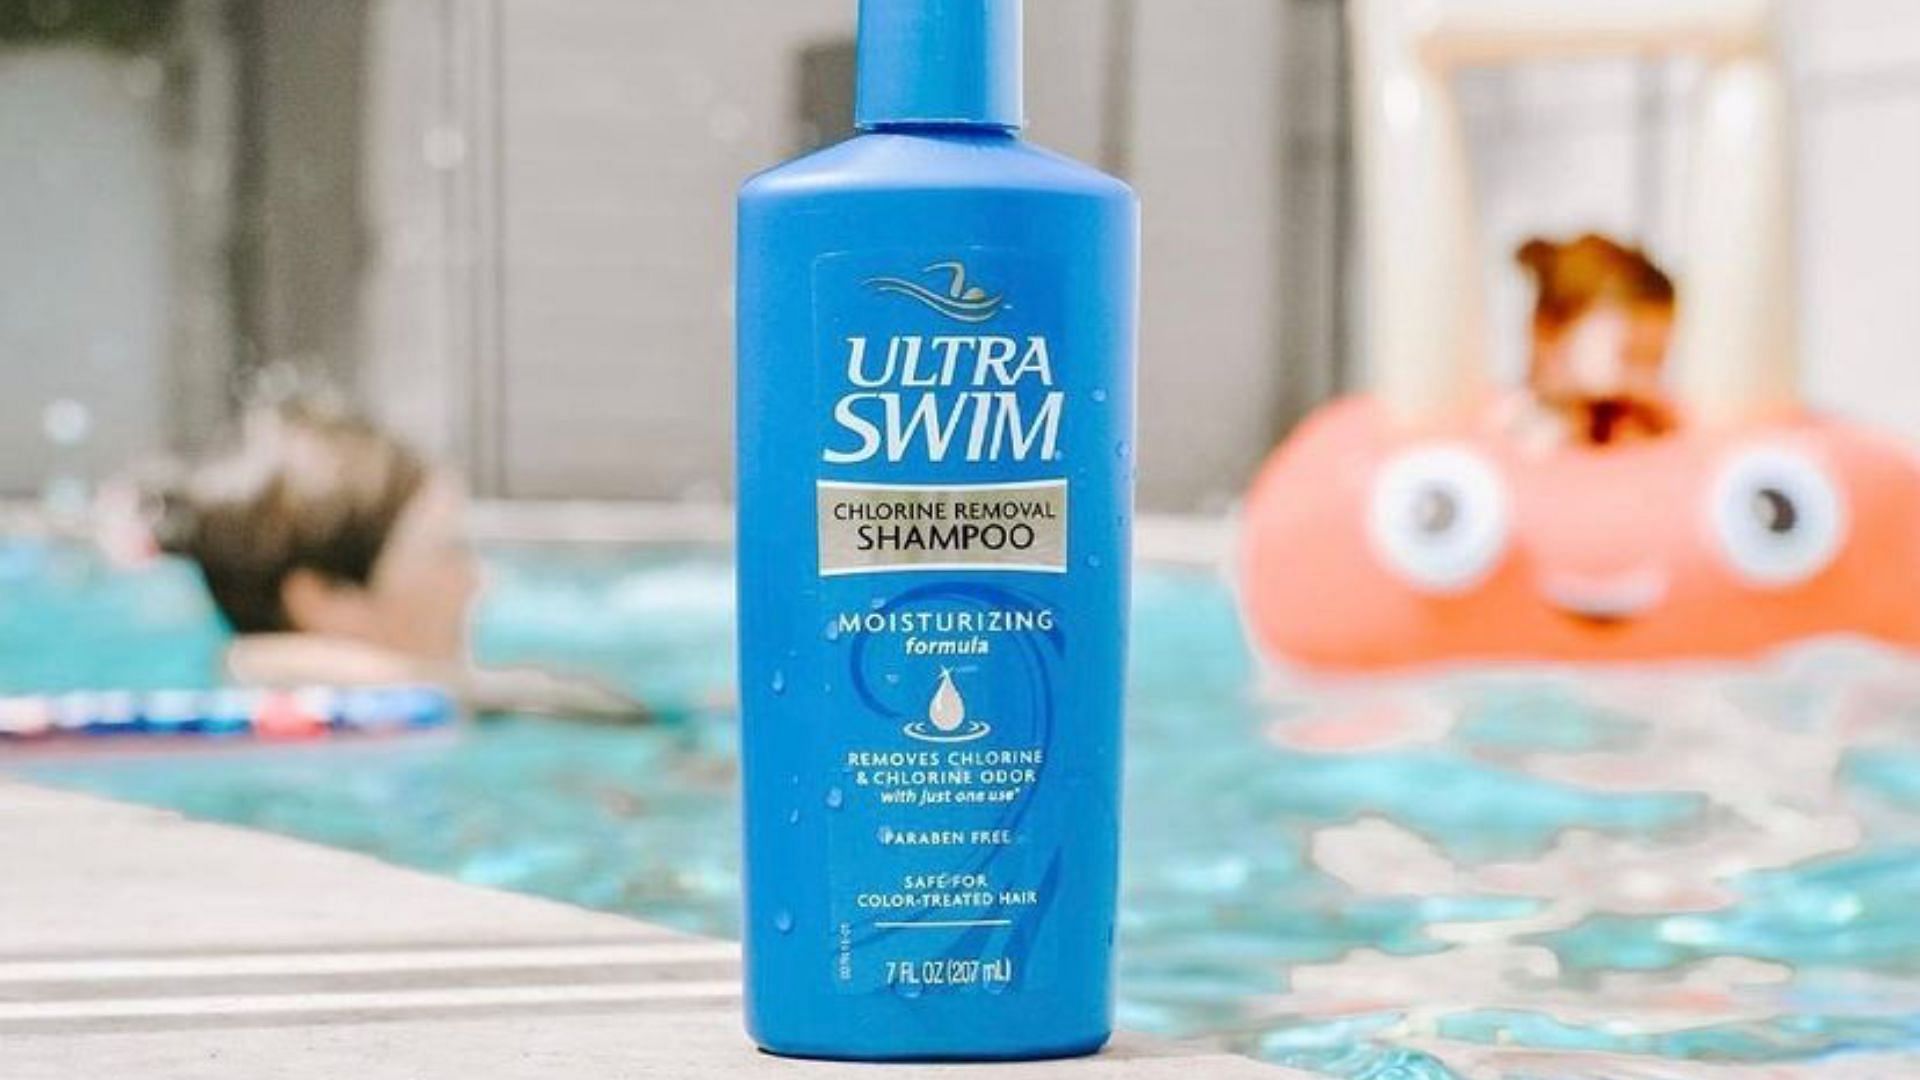 Ultraswim chlorine removal shampoo (Image via Ultraswim)